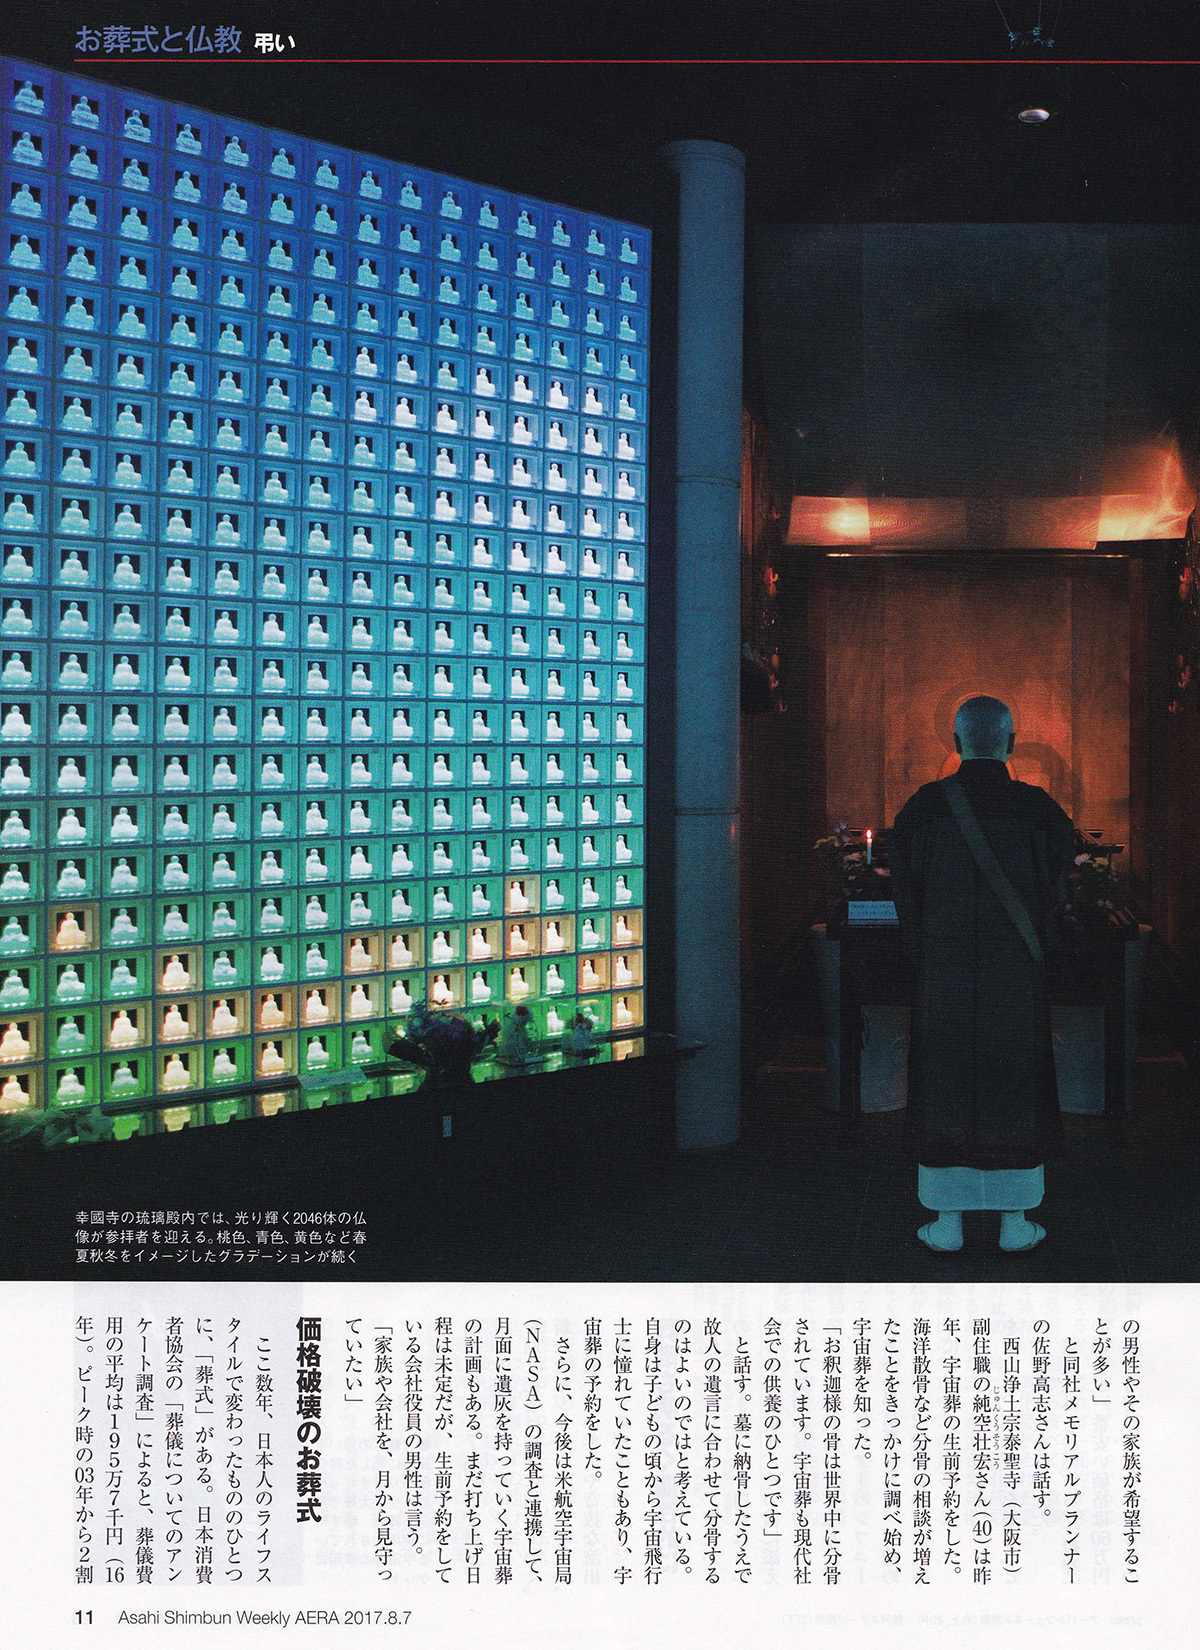 朝日新聞出版『AERA』にて、
宇宙葬に関するインタビューが掲載されました。4